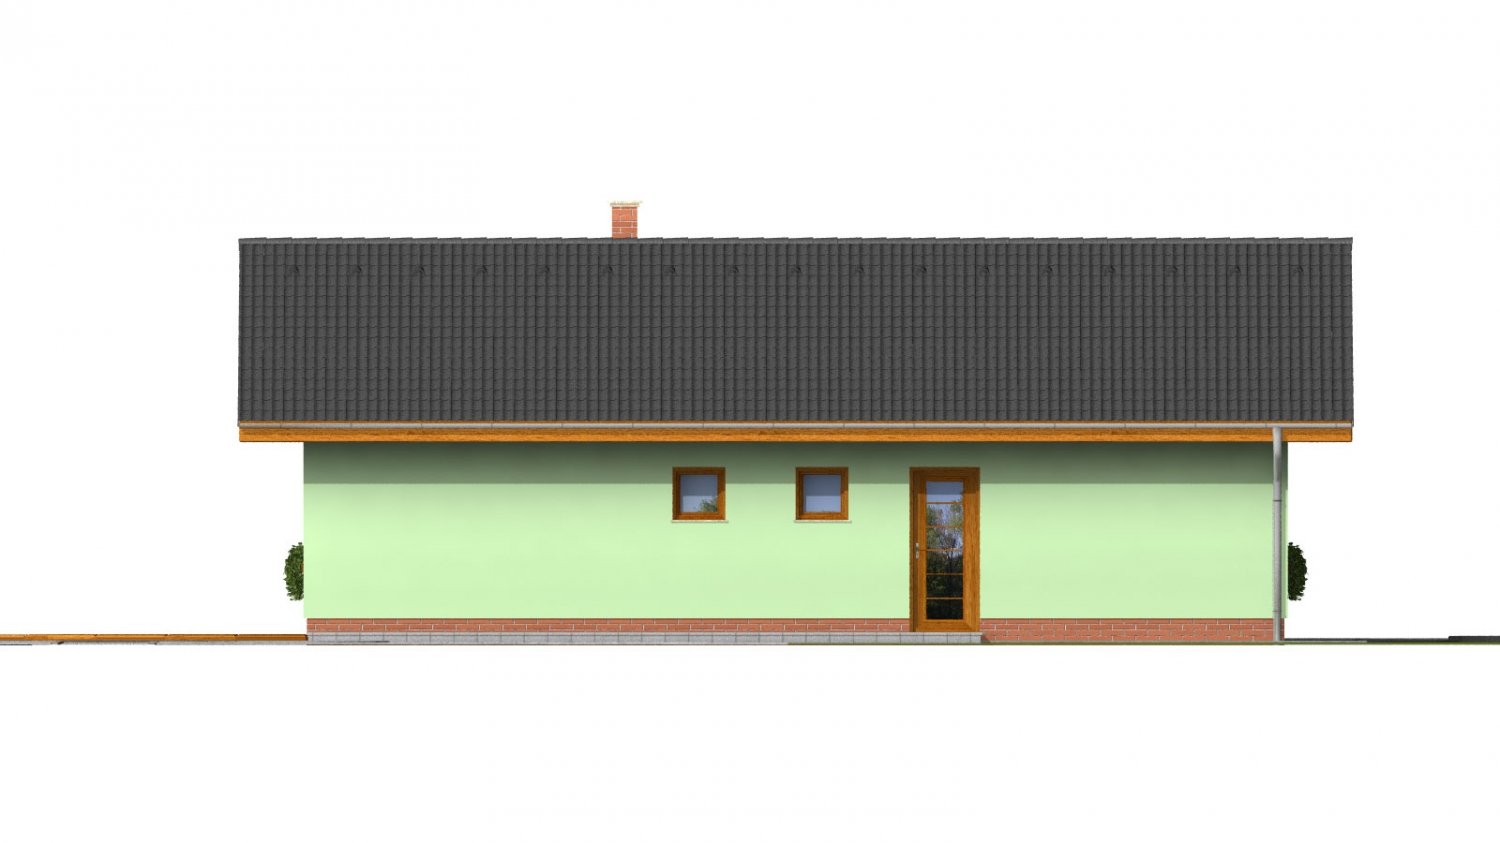 Pohľad 1. - Zděný dům s bočním vstupem a sedlovými střechami.